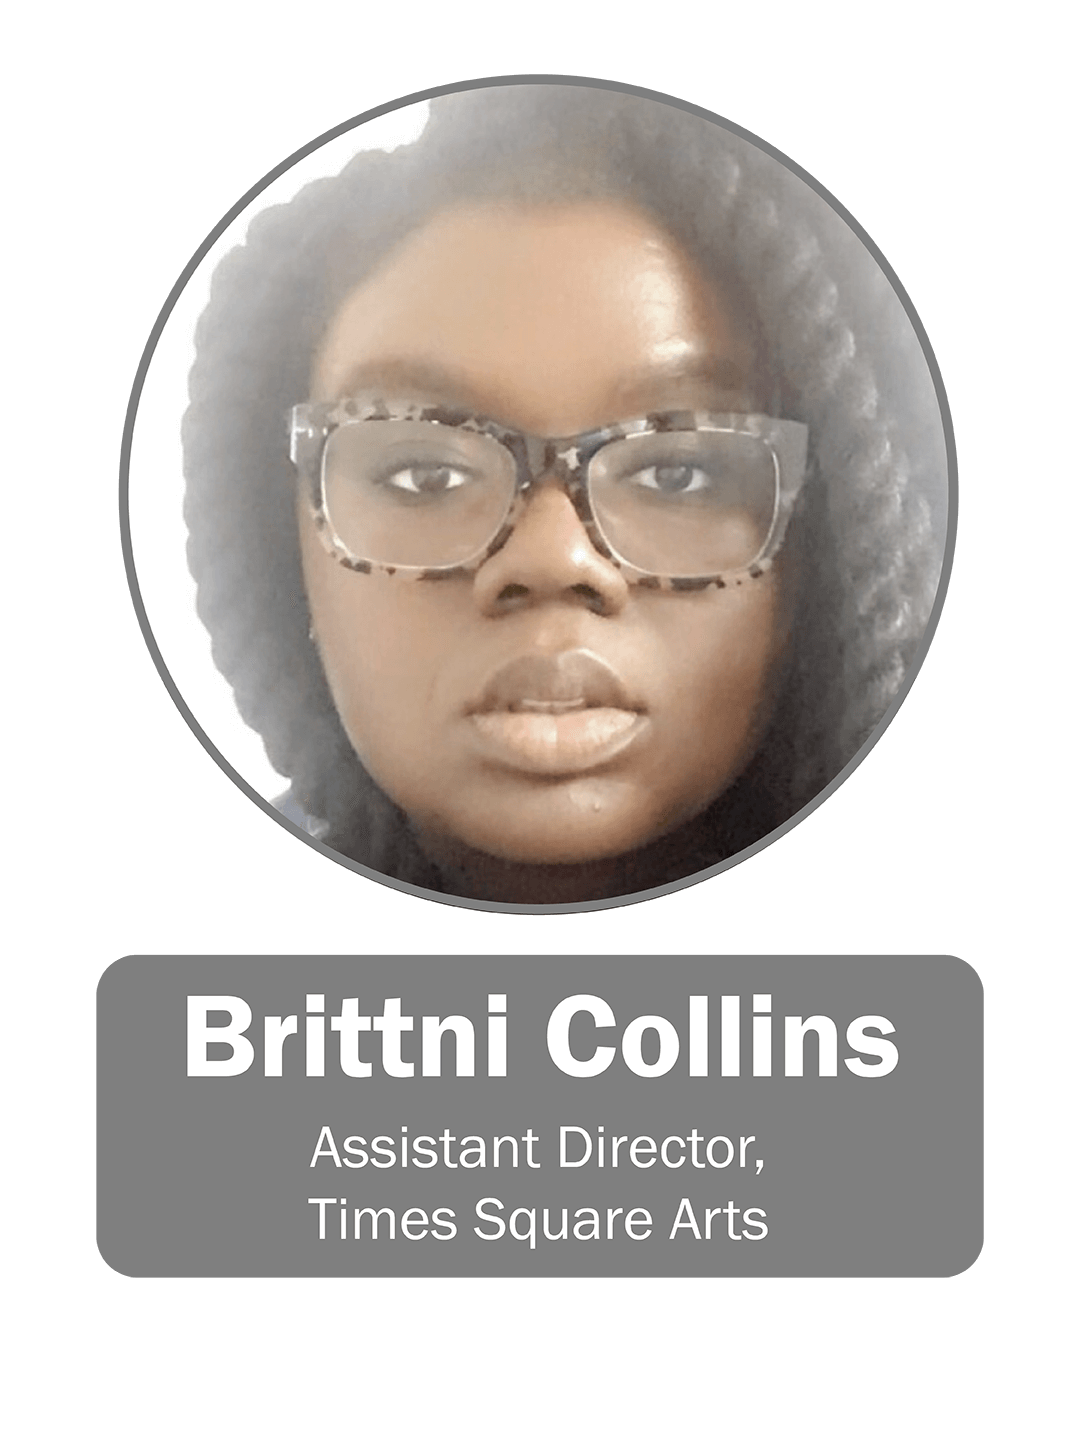 Brittni Collins | Assistant Director, Times Square Arts